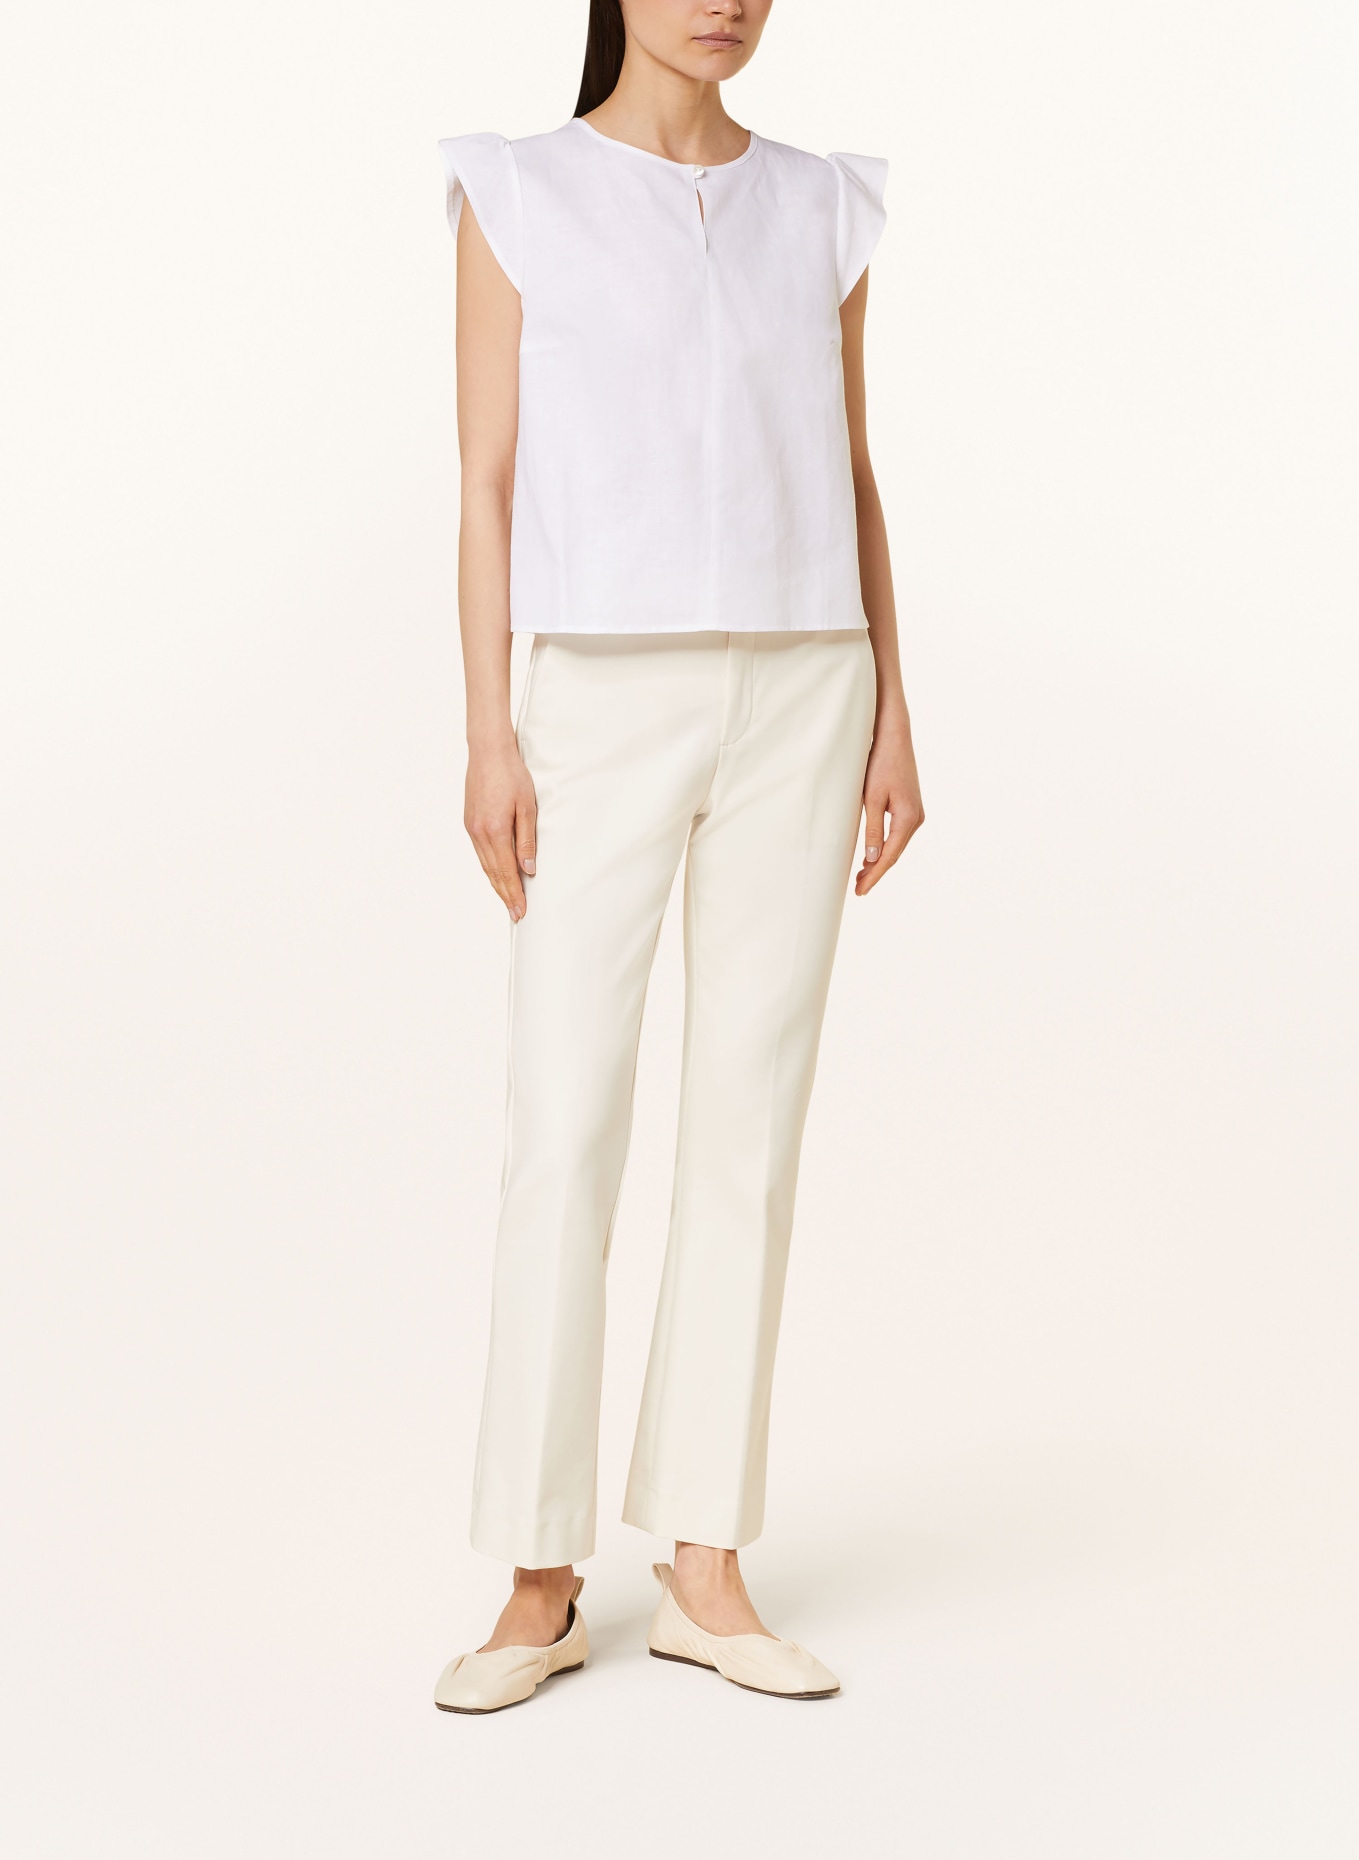 ROCKMACHERIN Shirt blouse SESA with linen, Color: WHITE (Image 2)